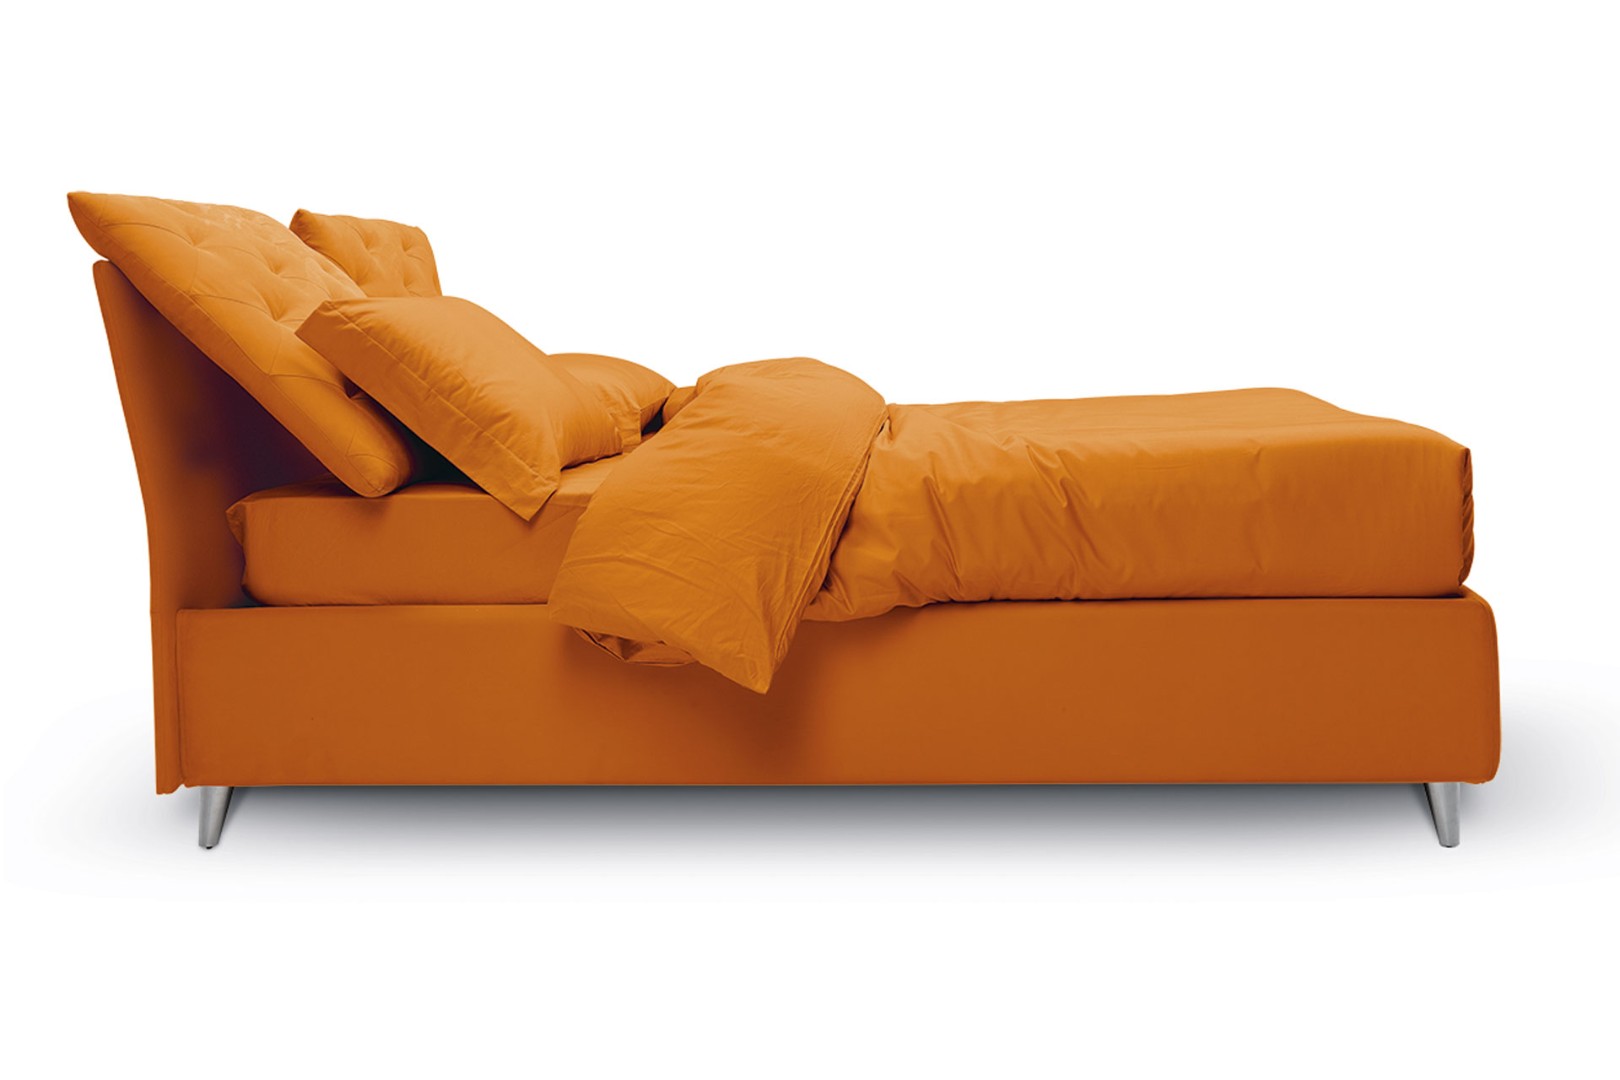 Кровать So Ever — ₽, купить у официального дилера Nicolettihome